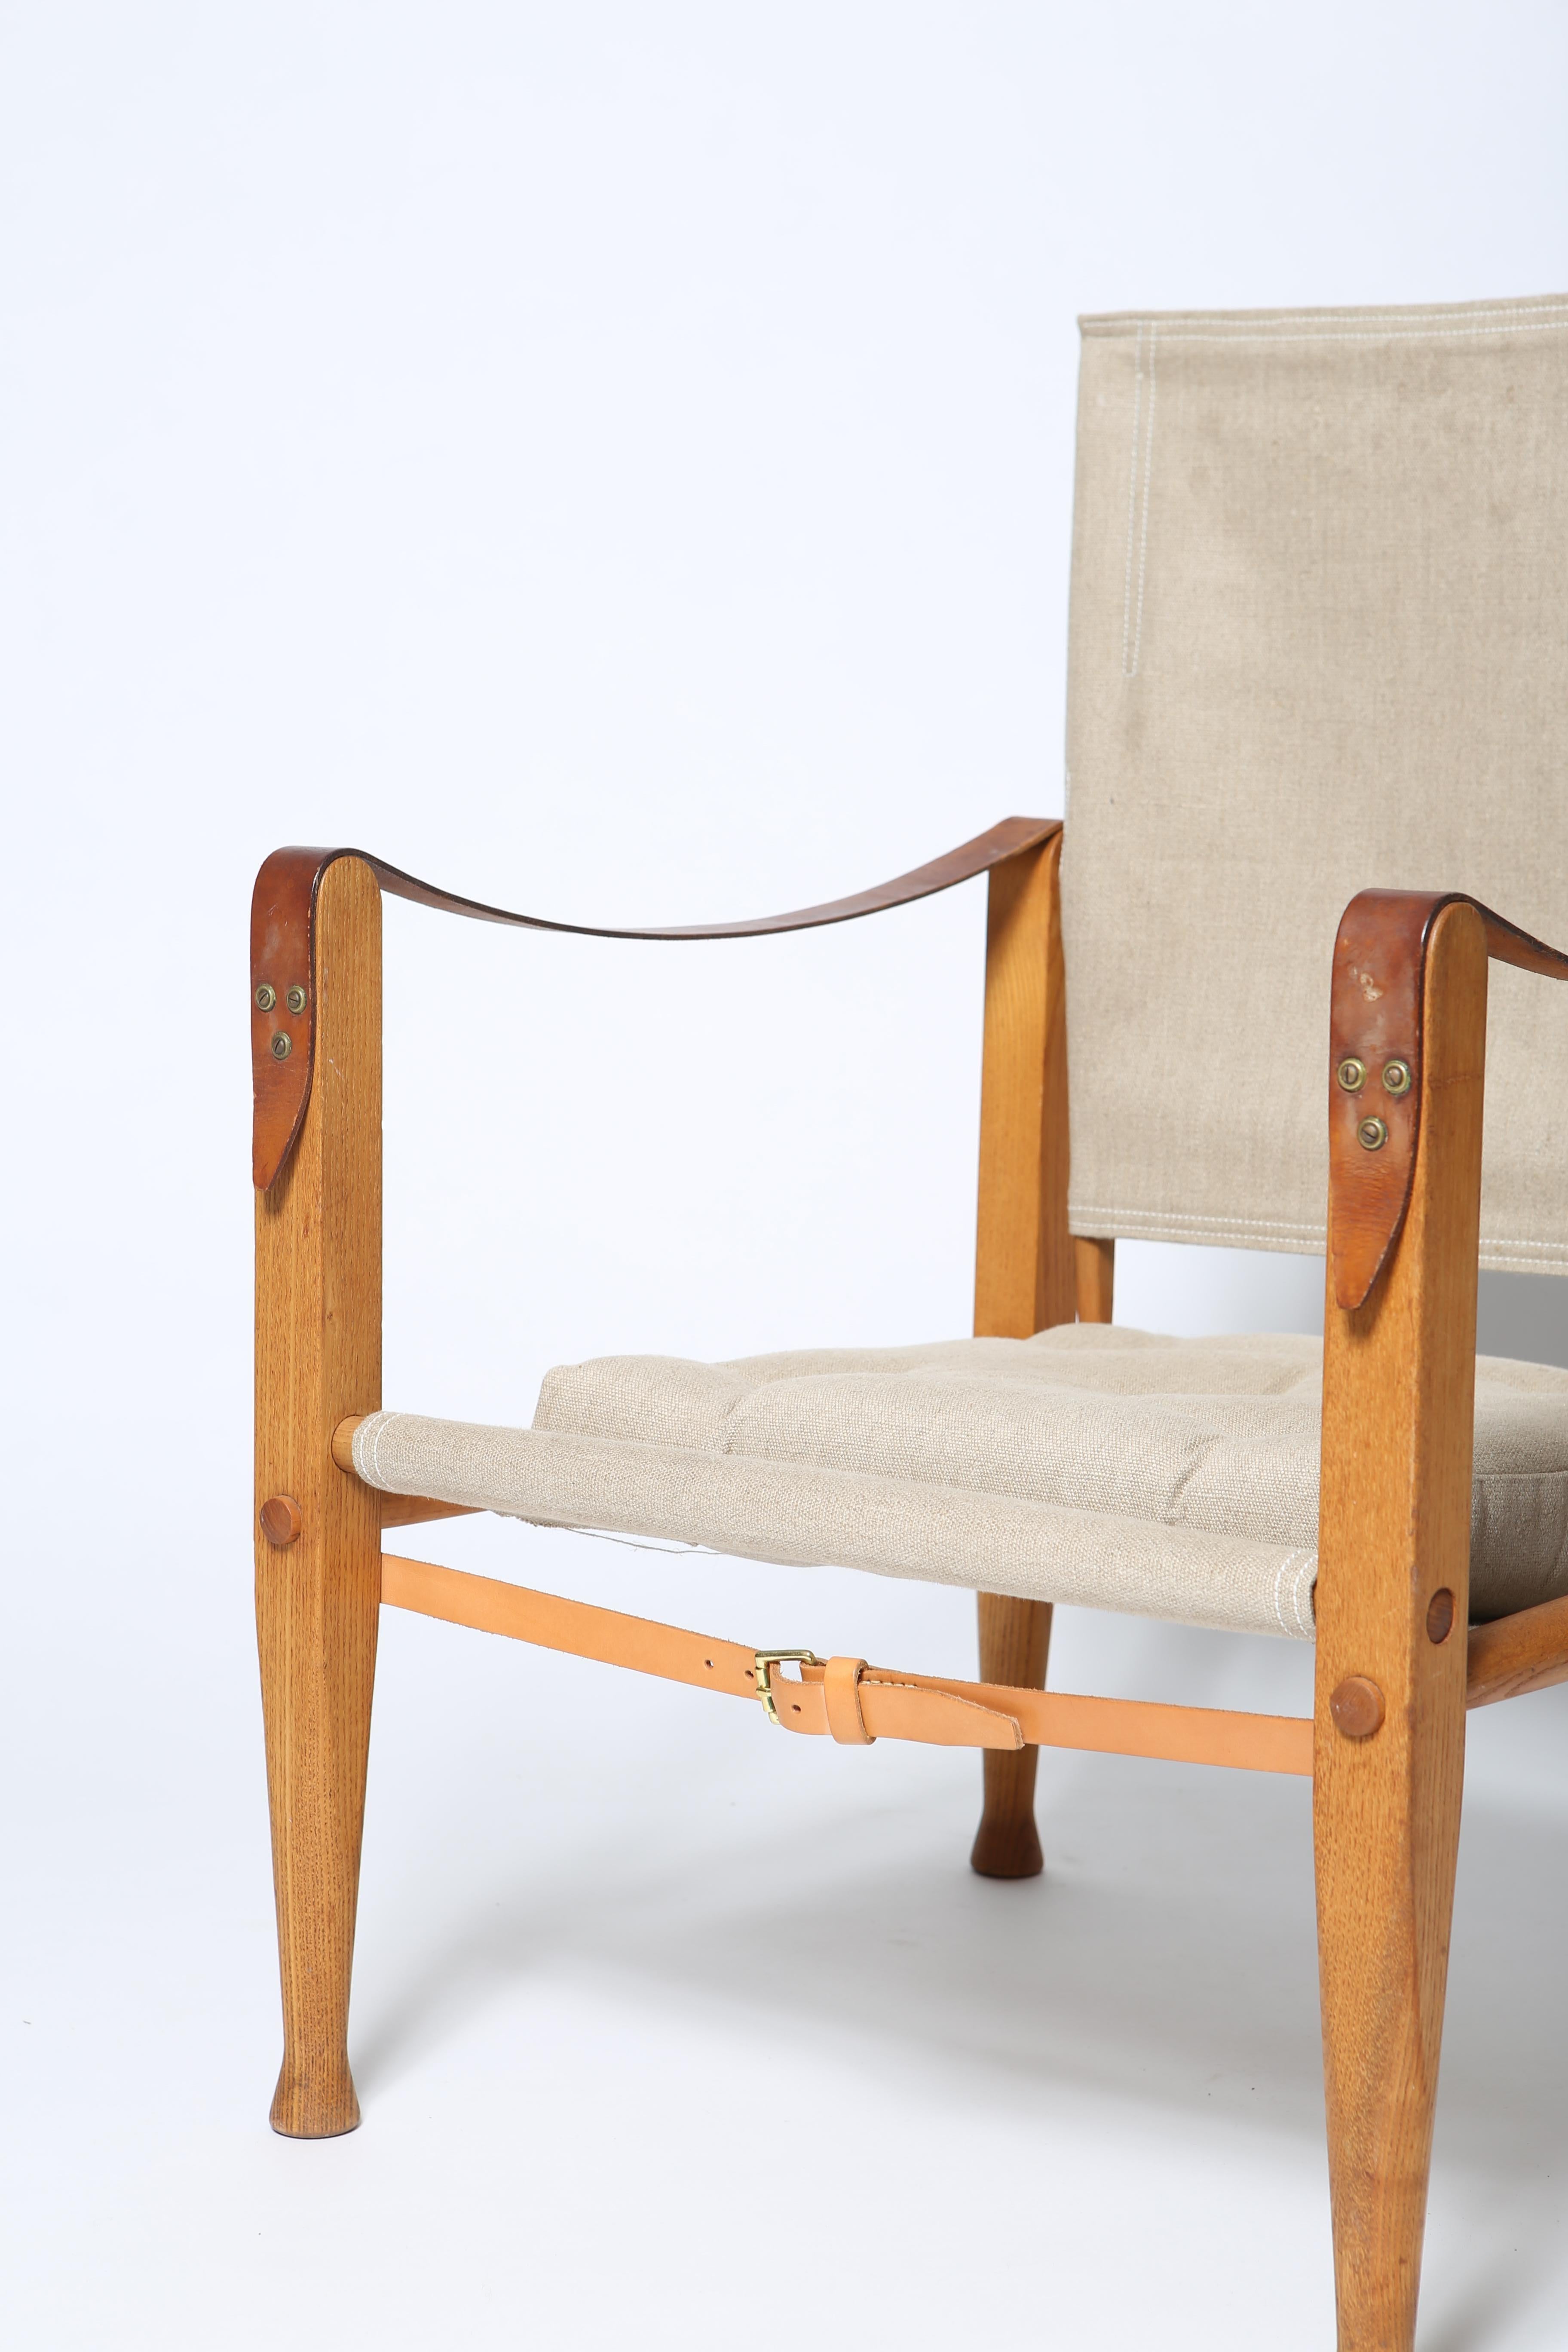 Chaise safari originale et iconique du professeur Kaare Klint. Conçu en 1927. Cette version date des années 1960 et est réalisée en frêne massif. Belle patine du bois, non restauré. Les éléments en toile sont plus récents et fabriqués exactement